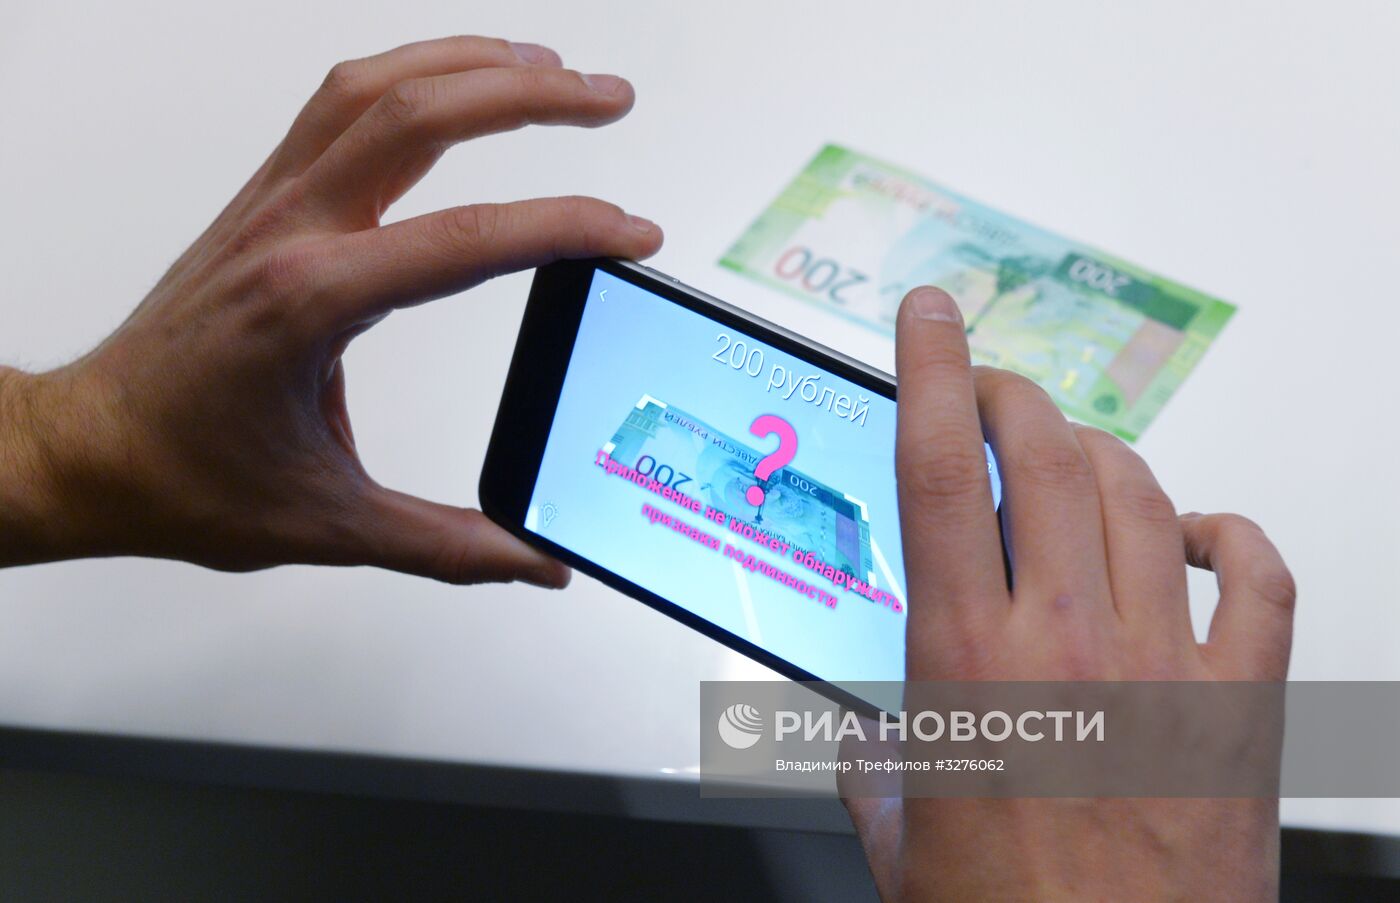 Презентация нового мобильного приложения АО "Гознак" - "Банкноты 2017"